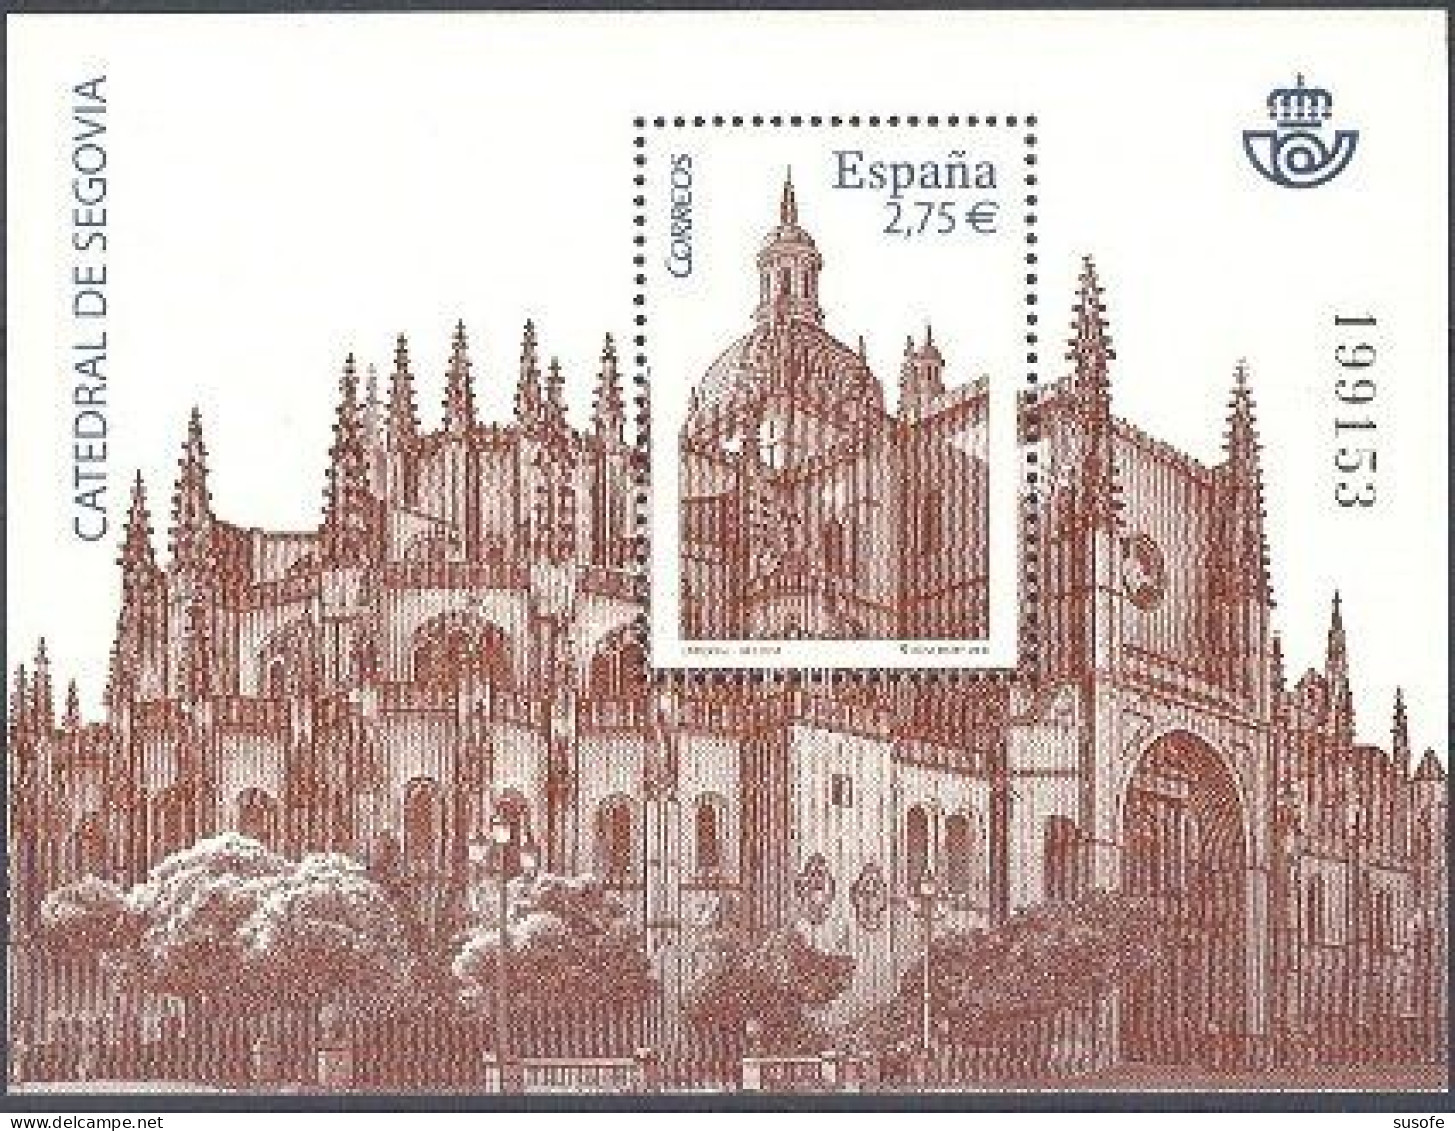 España 2010 Edifil 4580 Sello ** HB Catedral De Segovia Michel BL196 Yvert BF188 Spain Stamp Timbre Espagne Briefmarke - Unused Stamps